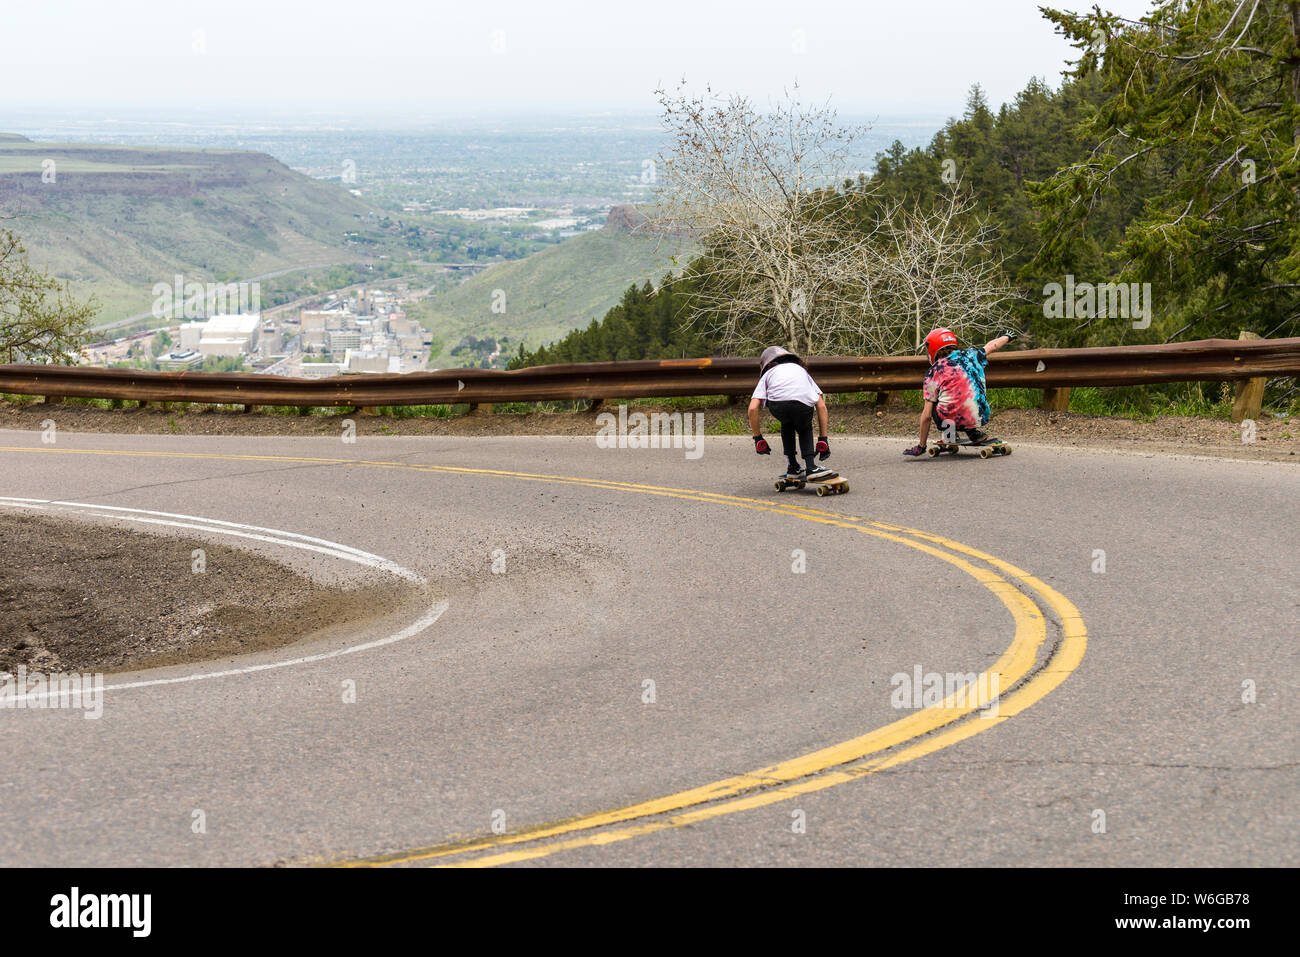 Surf giù per la strada di montagna - Due skateboarders crociera una ripida e tortuosa strada di montagna a Lookout Mountain, Golden, CO, Stati Uniti d'America. Foto Stock